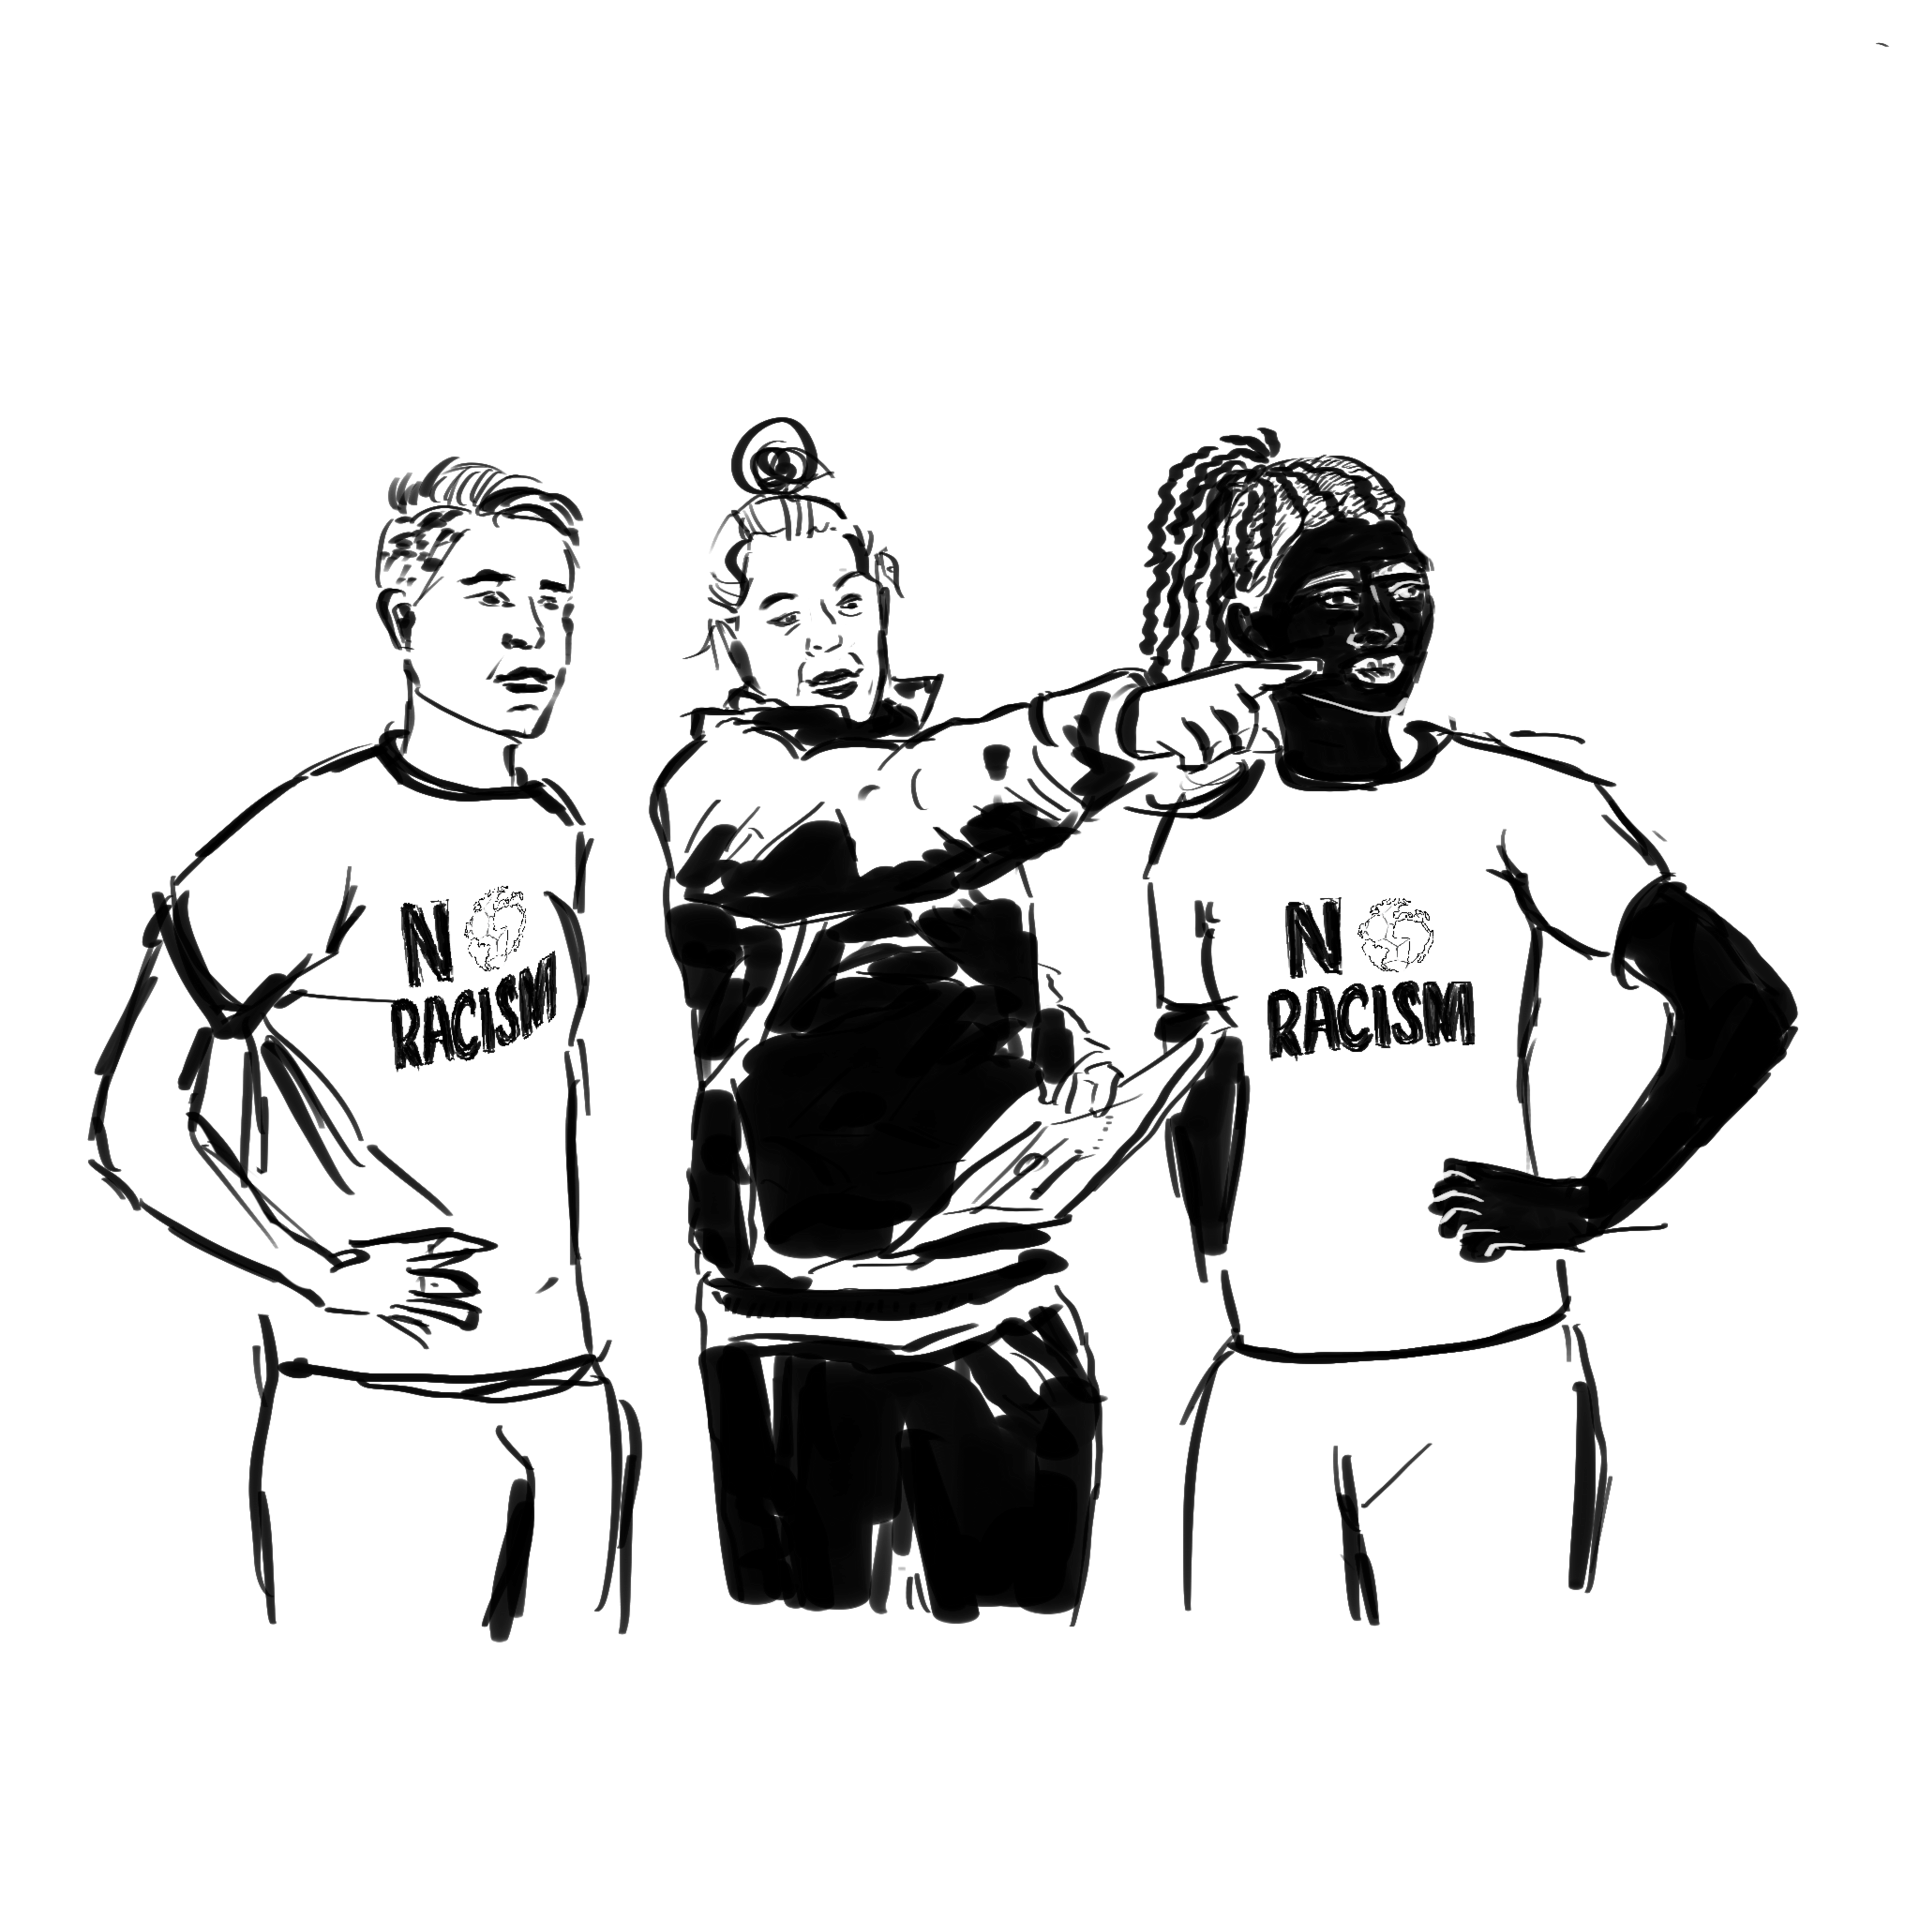   Alternativtext zum zweiten Symbol: Drei Personen, die Mittige zeigt mit einem Arm nach vorne und hält mit dem anderen ein Heft an ihrer Seite, die beiden rechts und links von ihr tragen 'No Racism'-Trikots und schauen in die gezeigte Richtung.